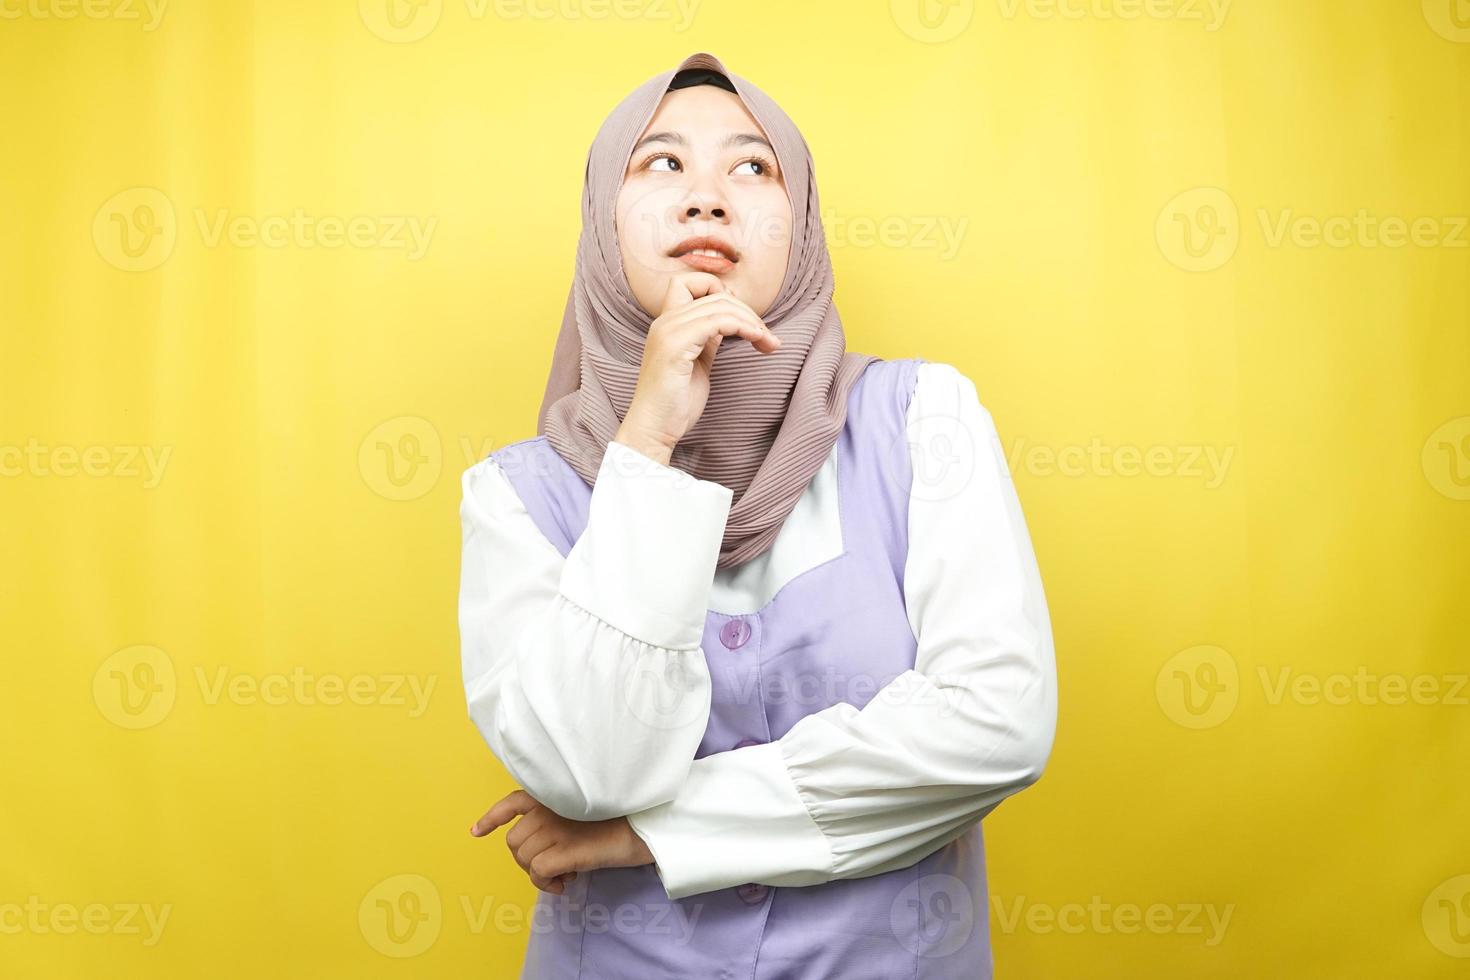 belle jeune femme musulmane asiatique pensant, à la recherche d'idées, à la recherche de solutions aux problèmes, les mains tenant les joues, isolées sur fond jaune photo